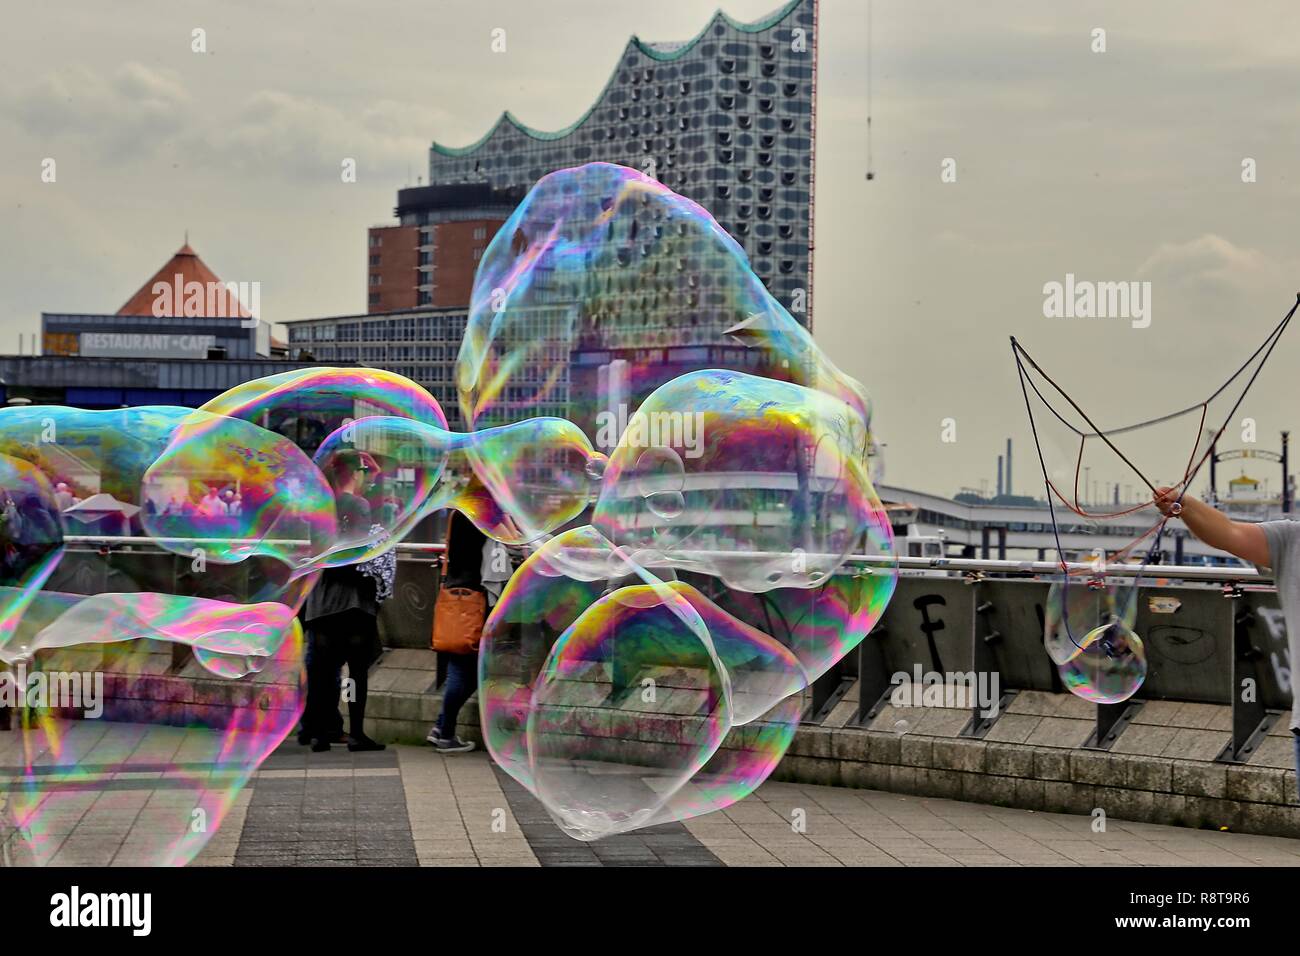 Ist das Omen für die Präsentation der Plaza in der Elbphilharmonie: Blasen bunte, die im nächsten momento zerplatzen? Foto Stock